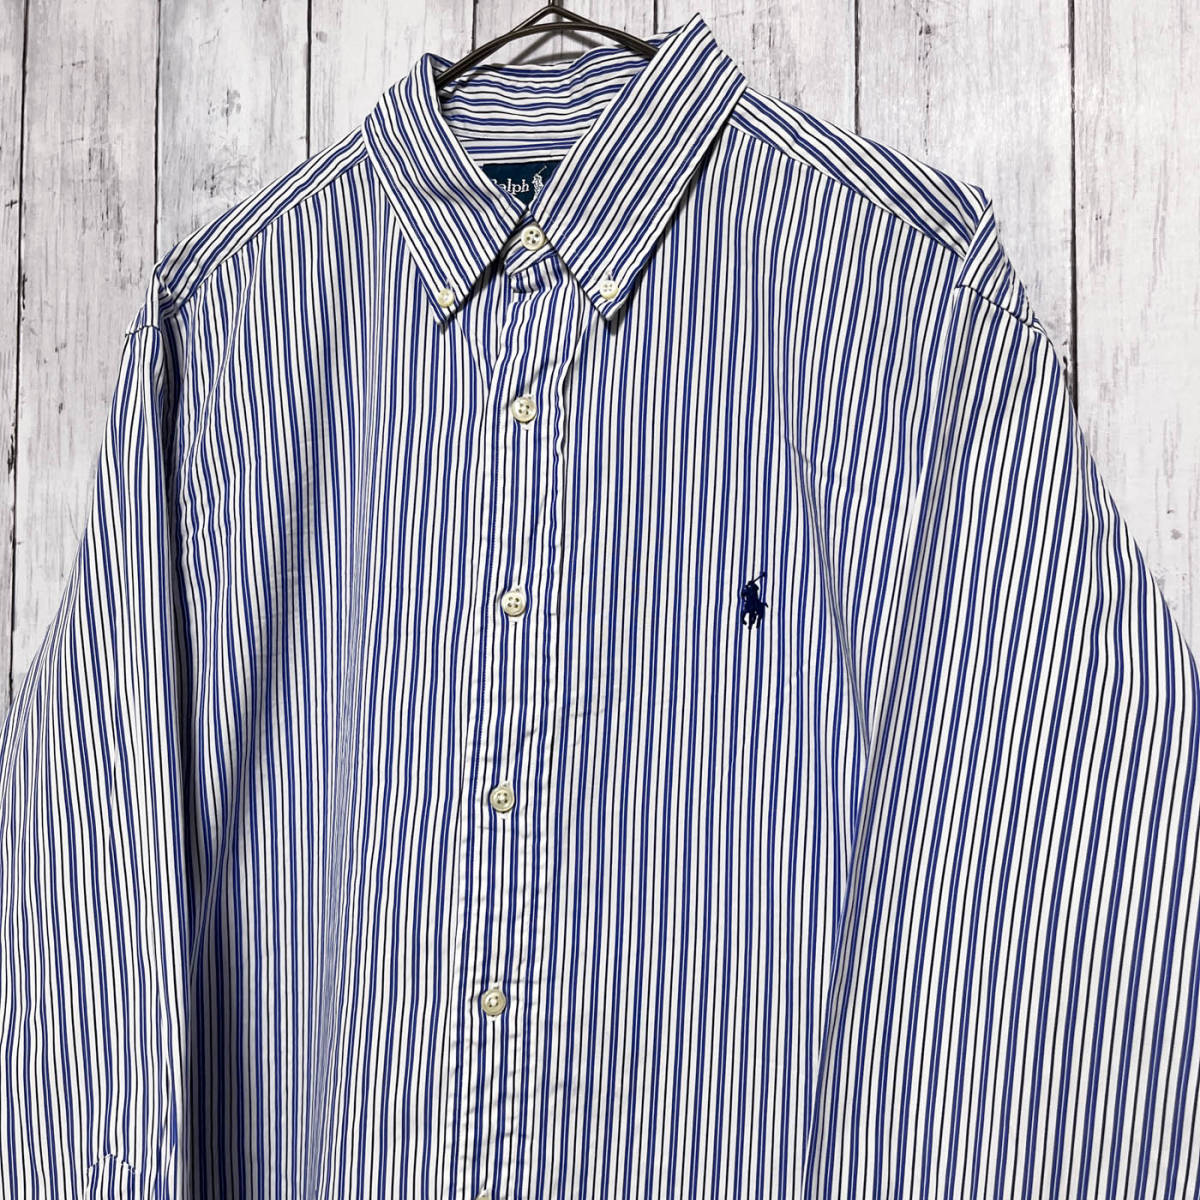 ラルフローレン Ralph Lauren CLASSIC FIT ストライプシャツ 長袖シャツ メンズ ワンポイント コットン100% サイズ16 Lサイズ 3‐993_画像3